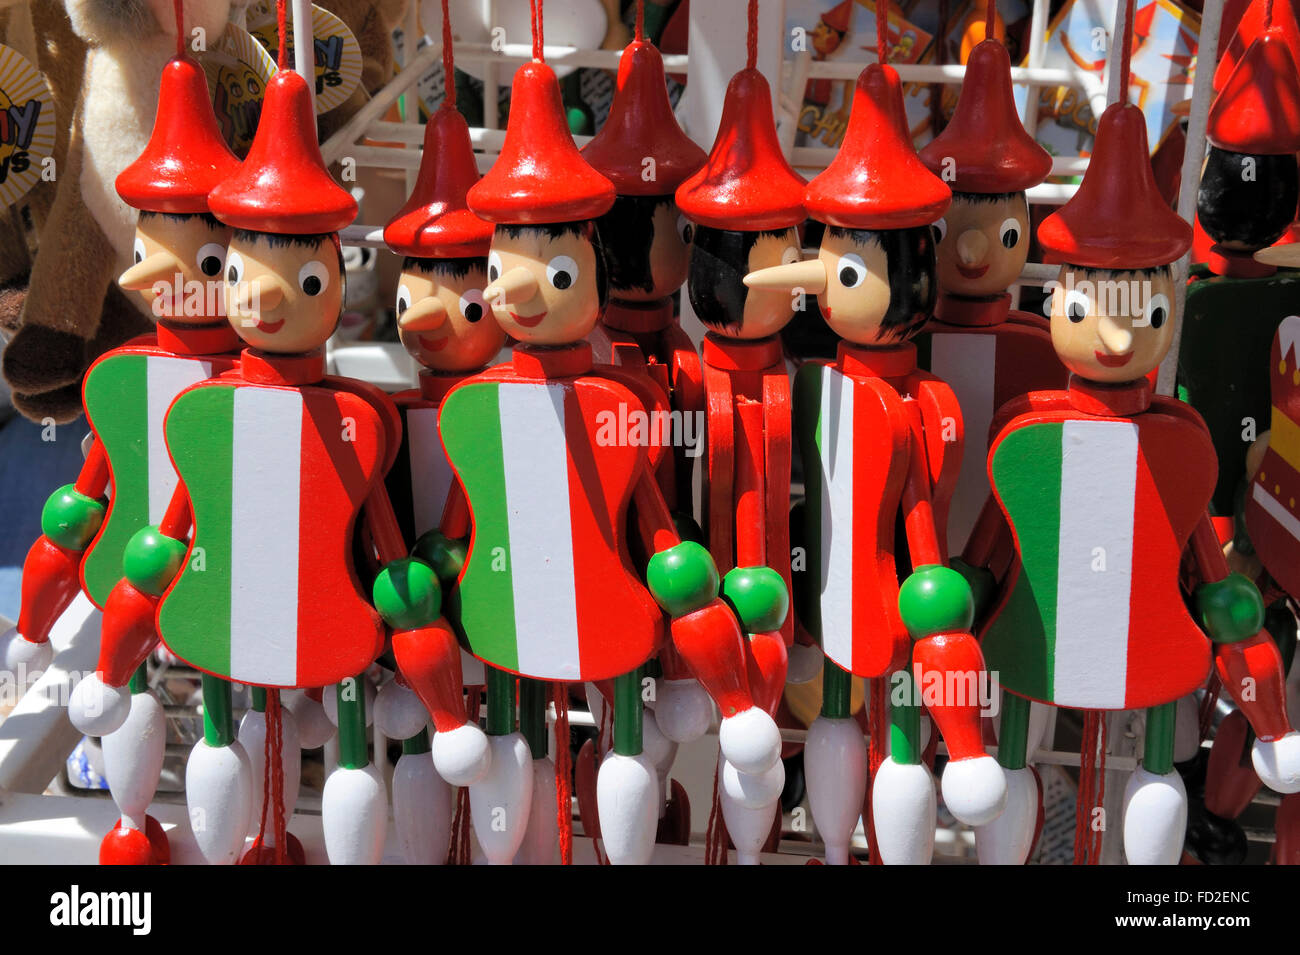 Pinocho títeres con la bandera italiana pintada en su cuerpo en una tienda de souvenirs italiano Foto de stock